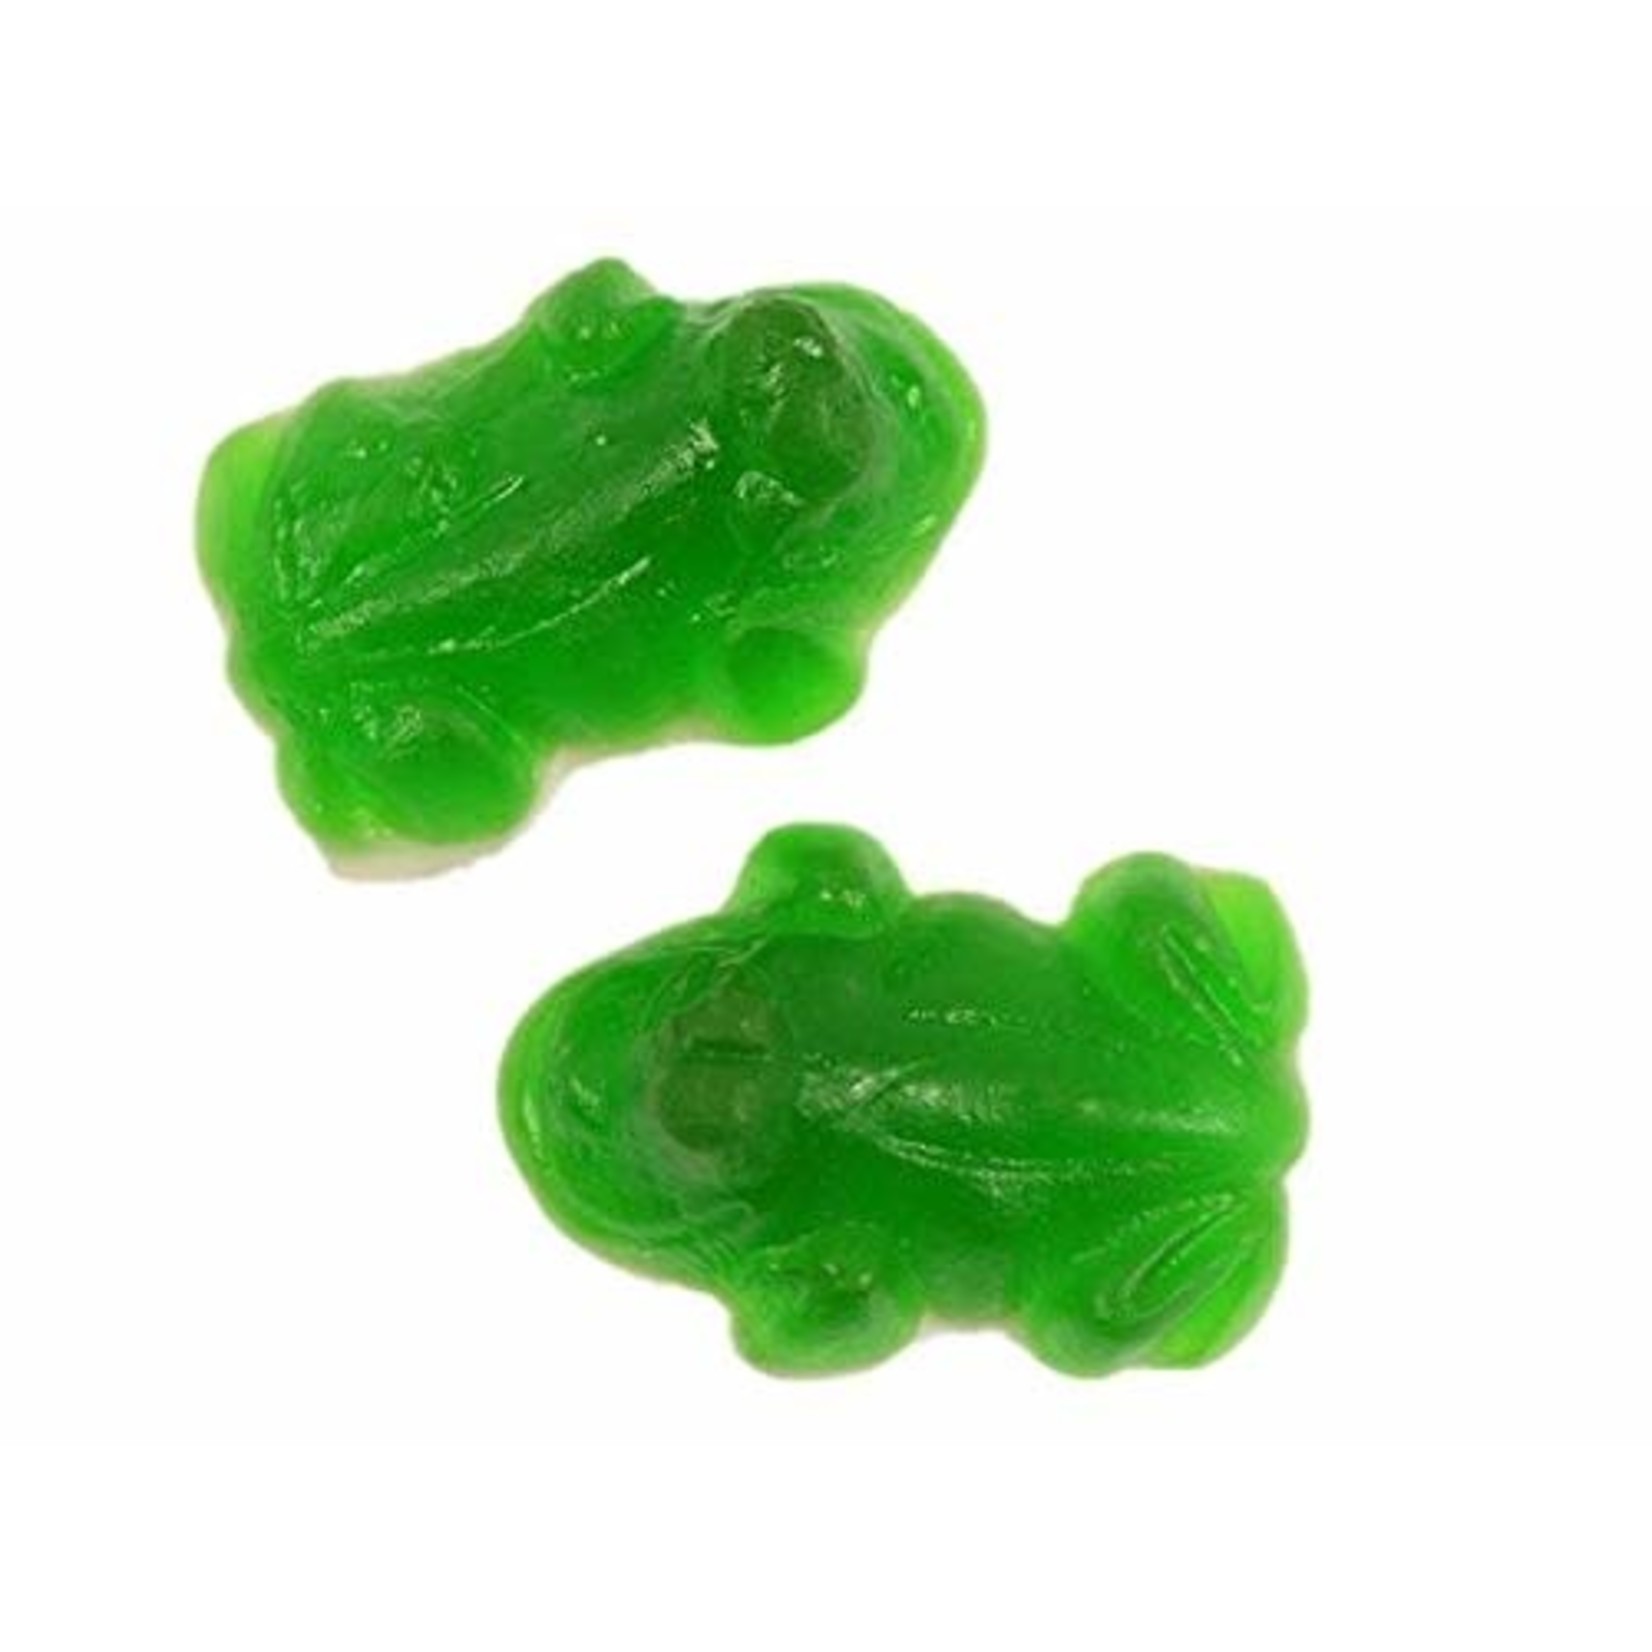 Vidal Gummi Green Frogs 4.4lb